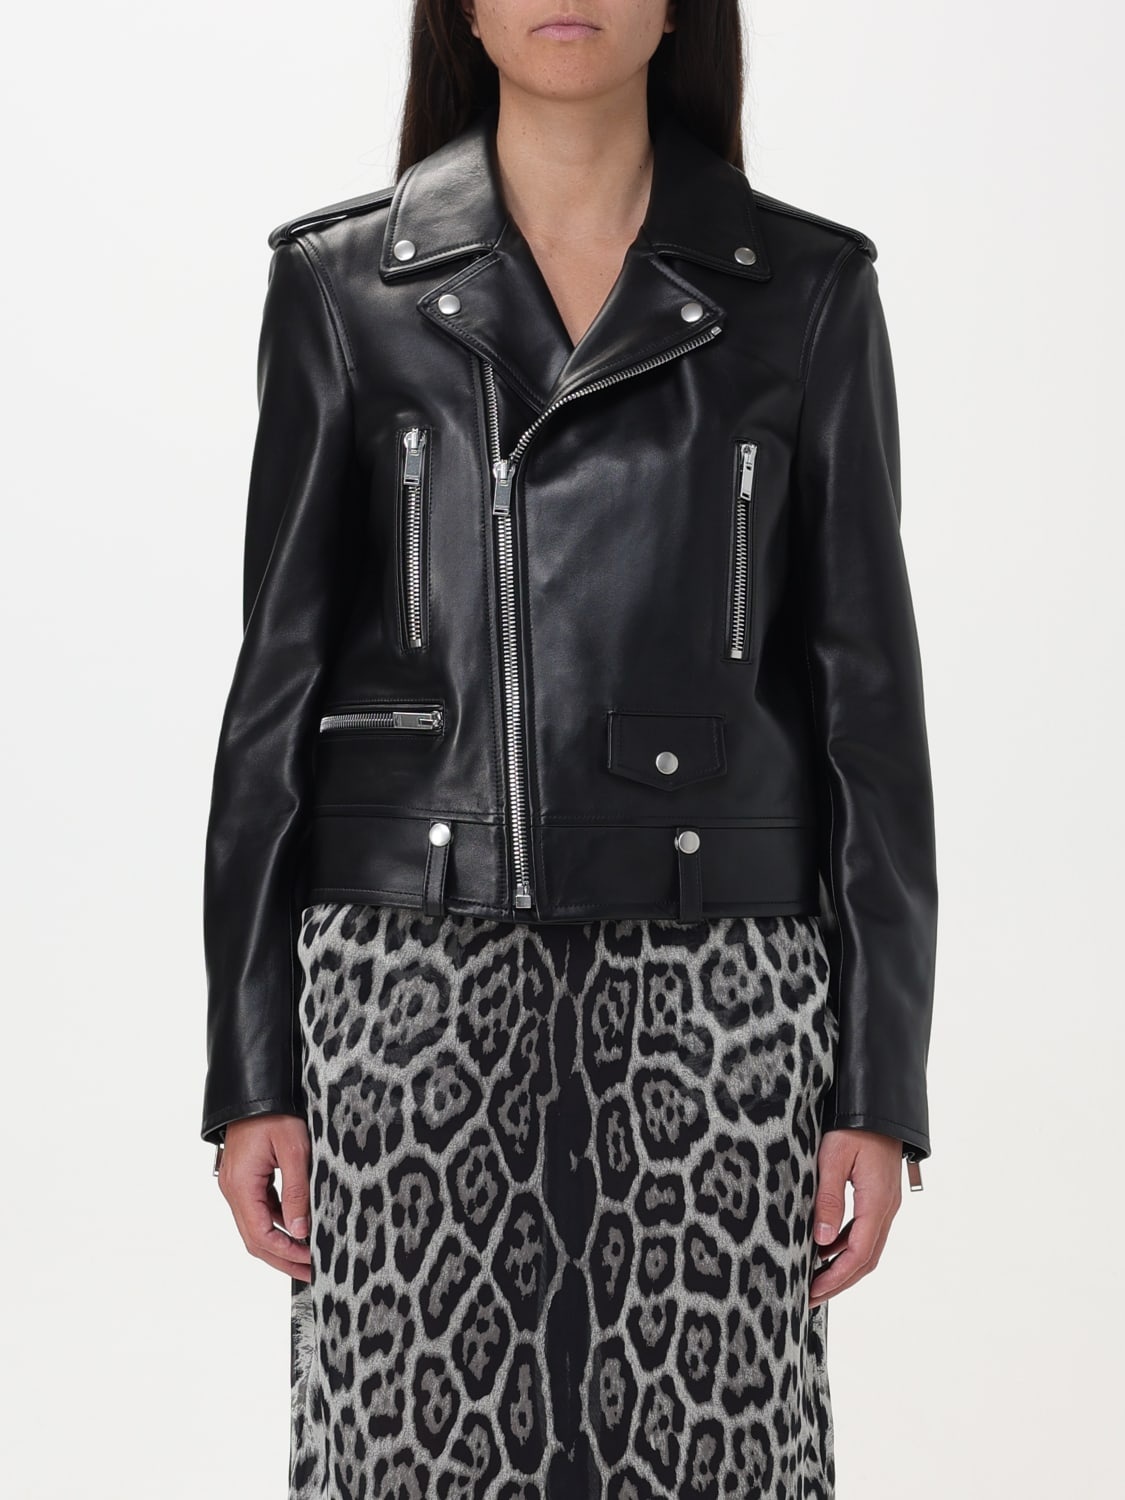 Saint Laurent leather jacket - 1